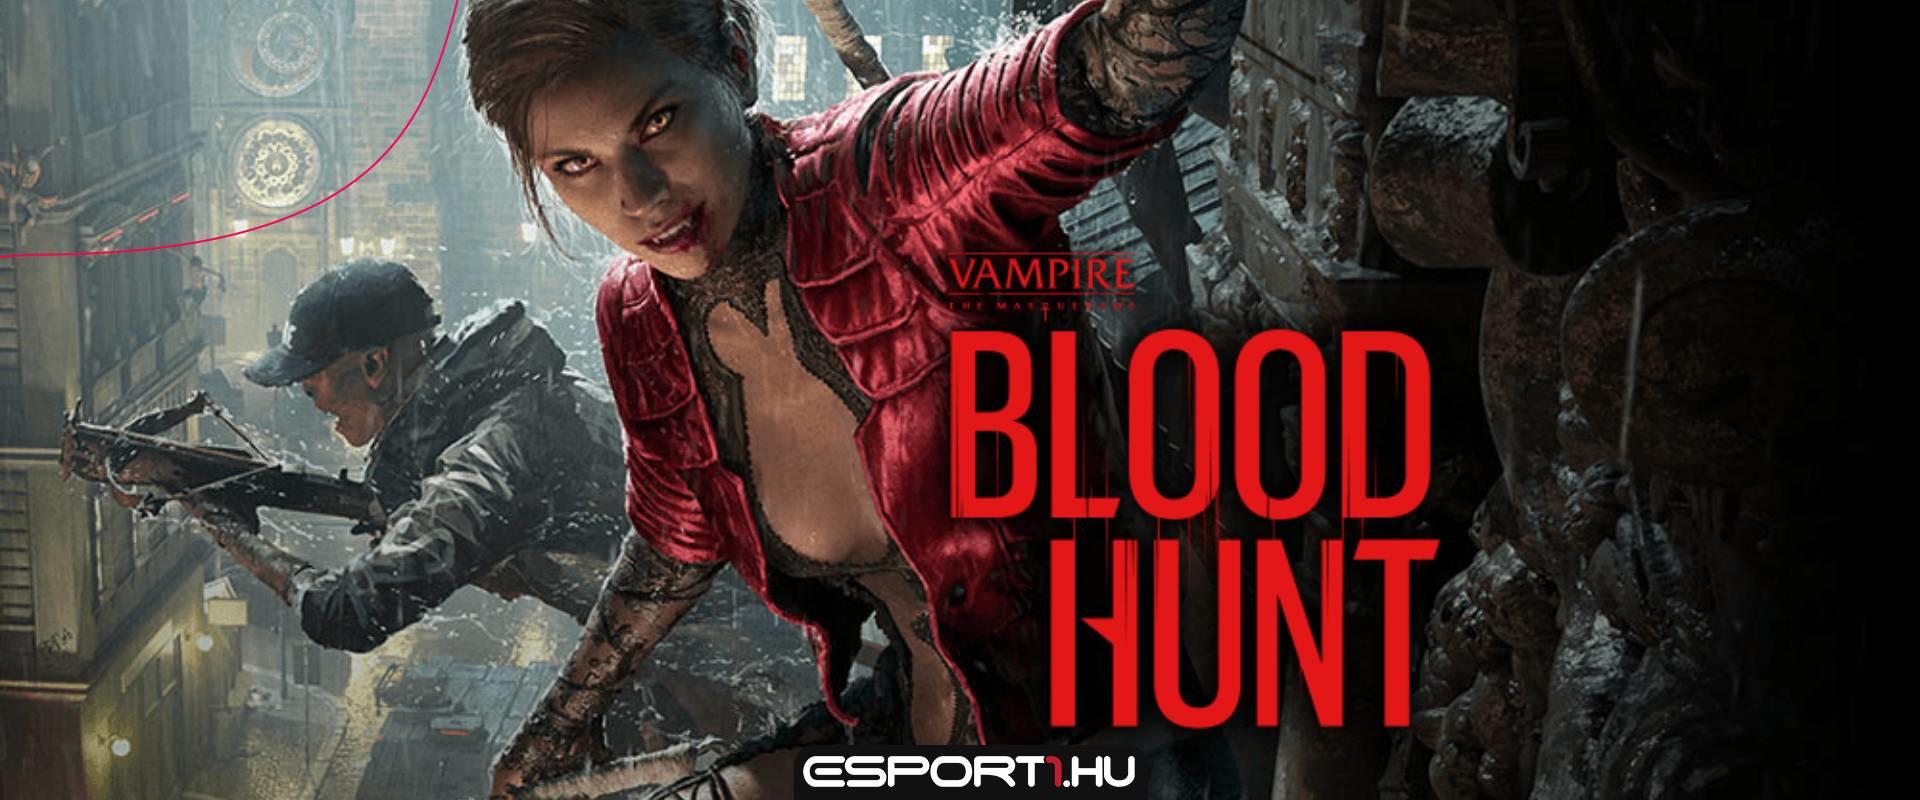 Frissítették a Vampire: The Masquerade - Bloodhunt gépigényét